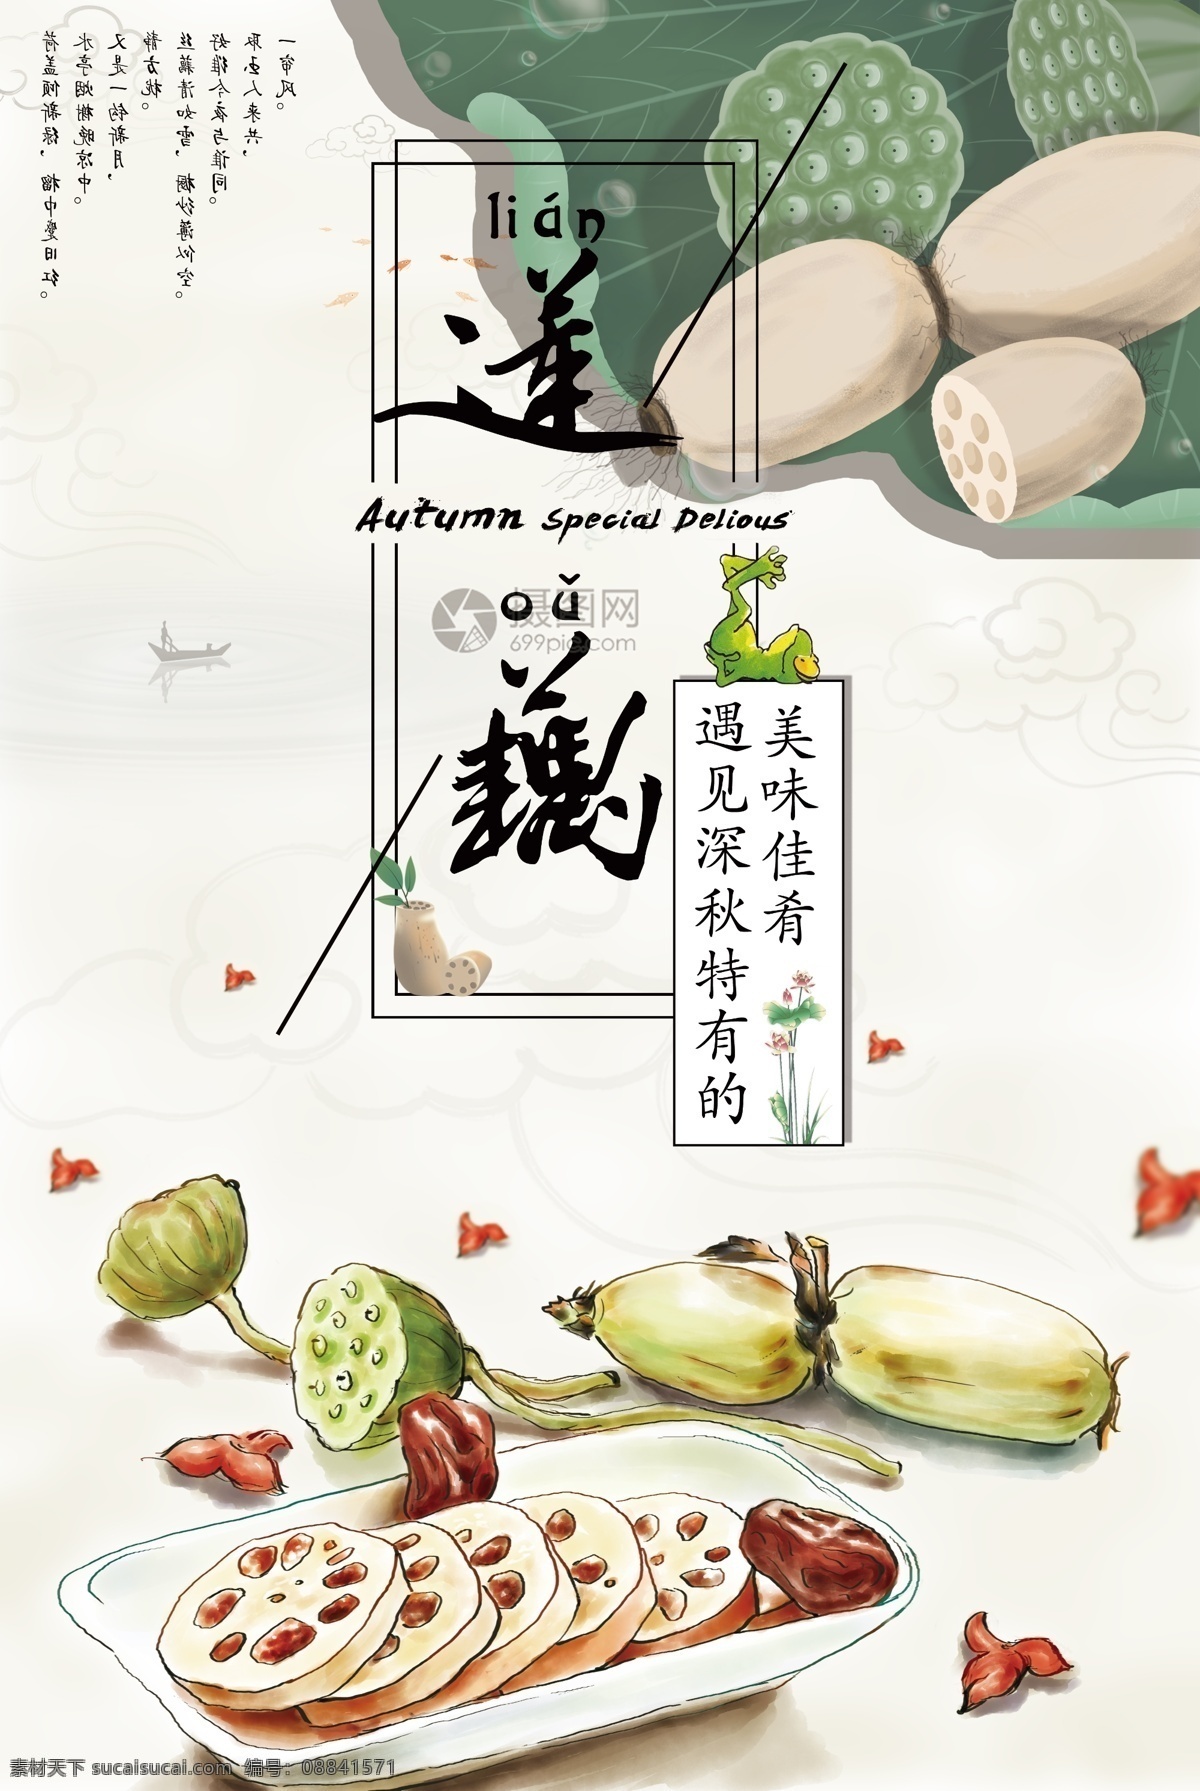 莲藕海报 莲藕 藕 养生 中药 营养 新鲜 当季 美味 食品 中国风 美食餐饮 海报